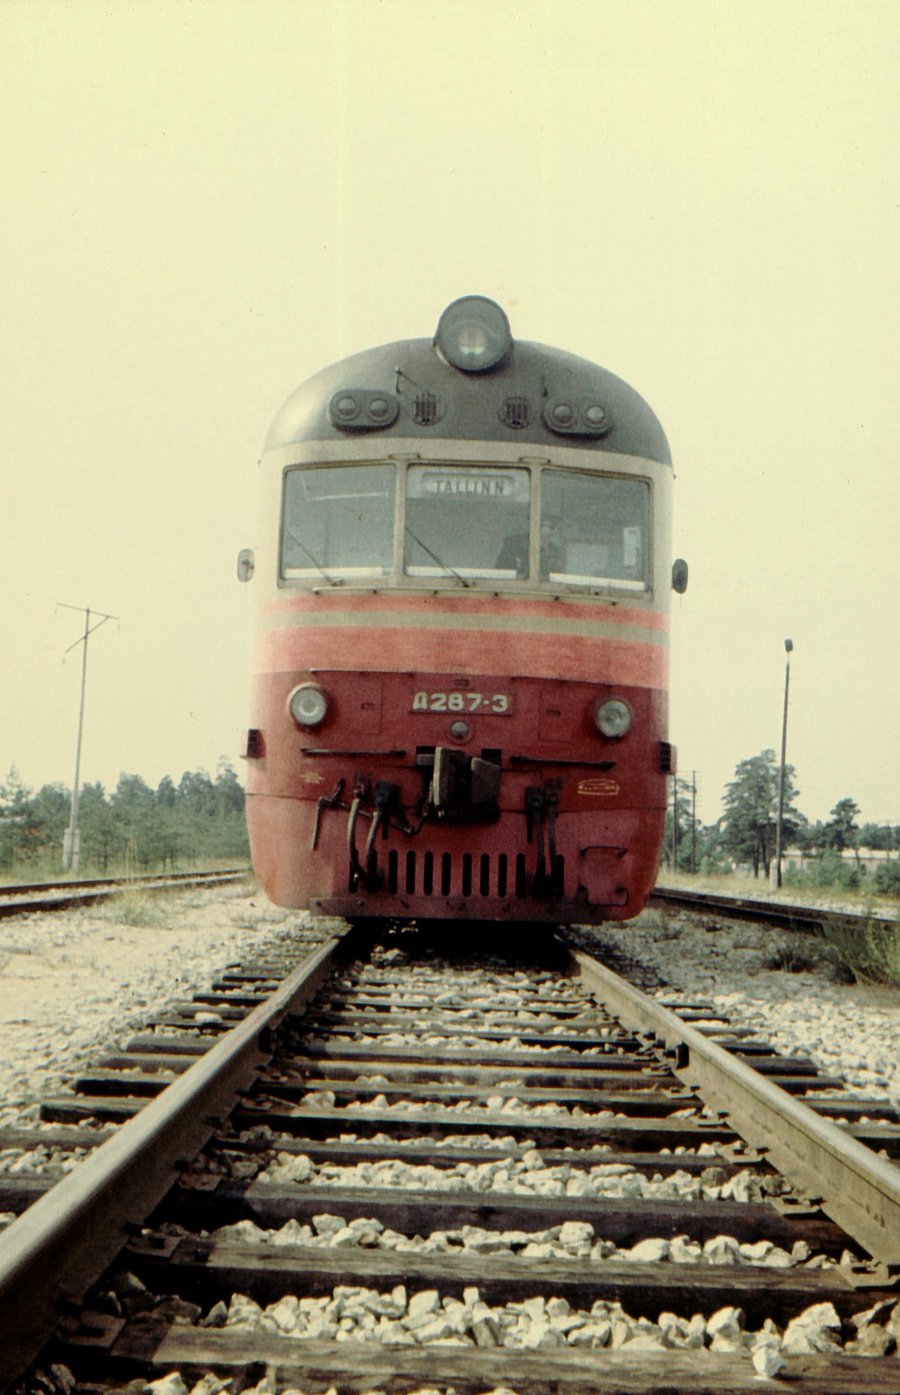 D1-287
08.1974
Männiku
